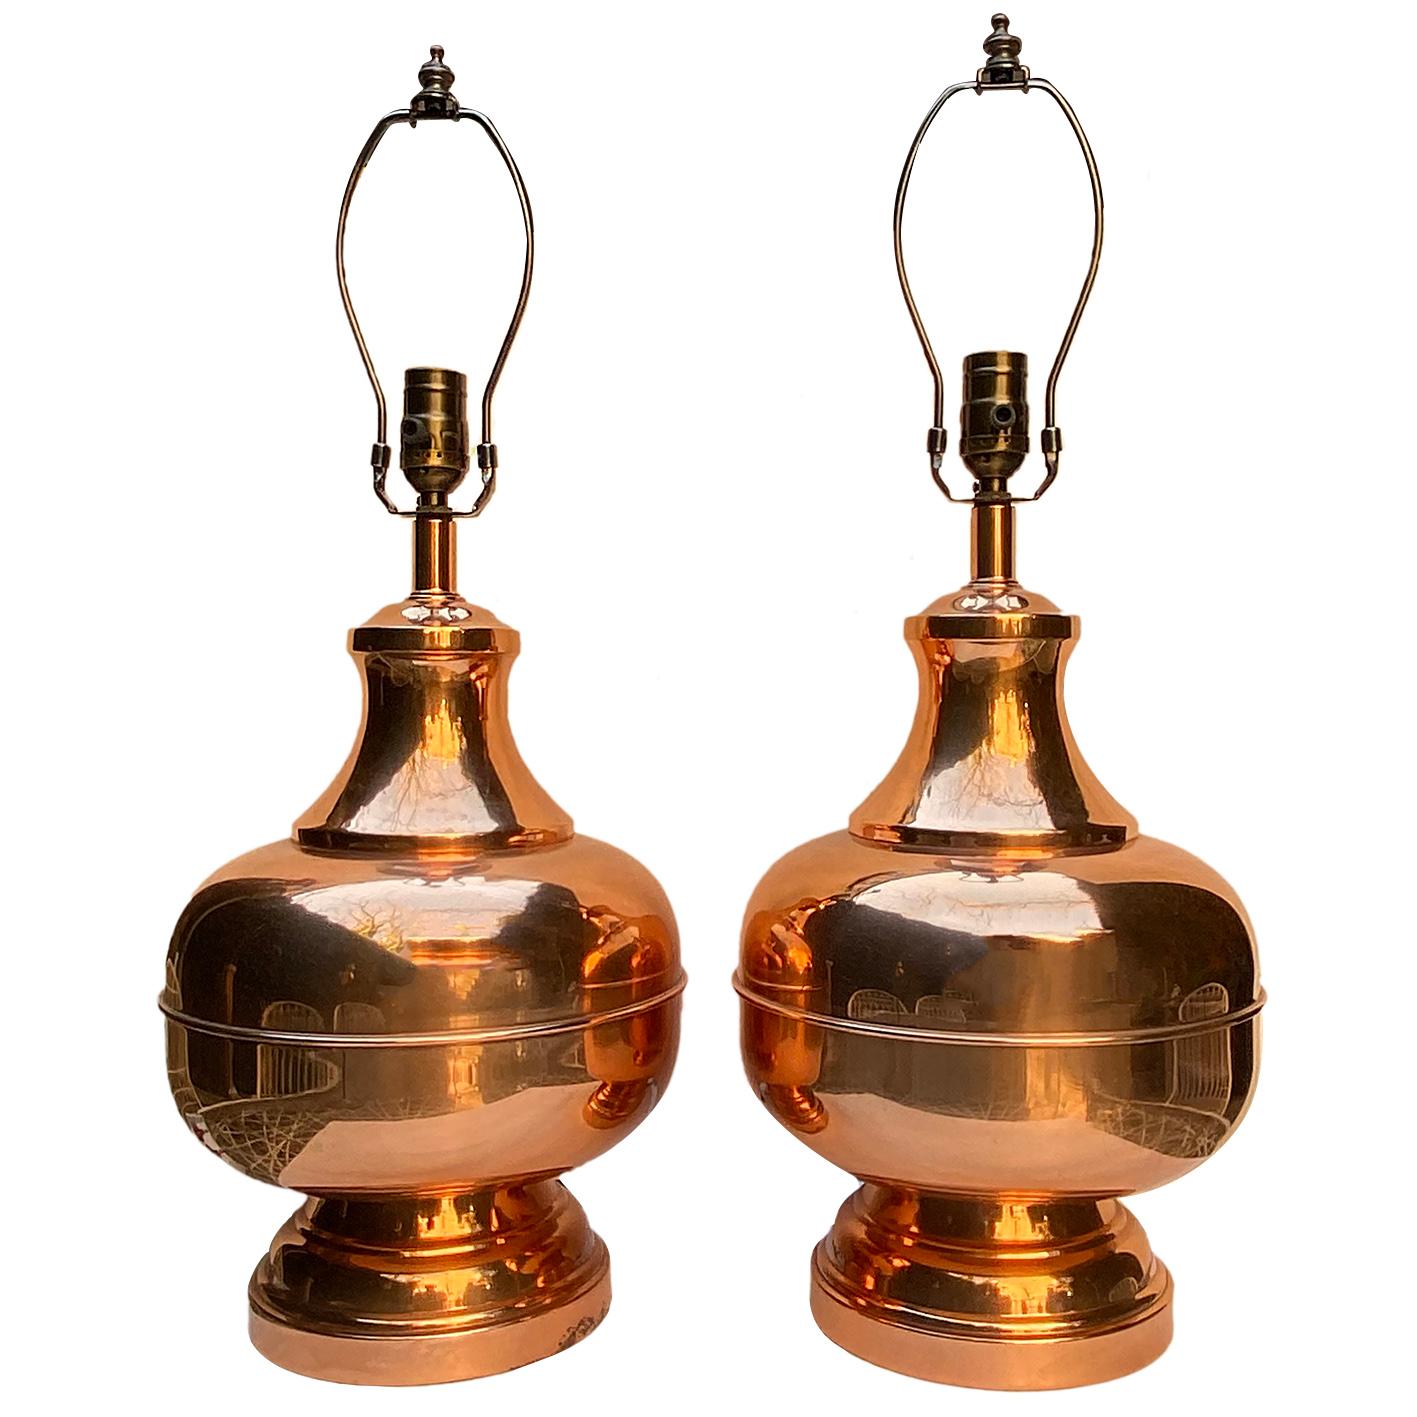 Paire de lampes de table en cuivre anglaises des années 1960 avec finition polie.

Mesures :
Hauteur du corps : 14
Diamètre : 9